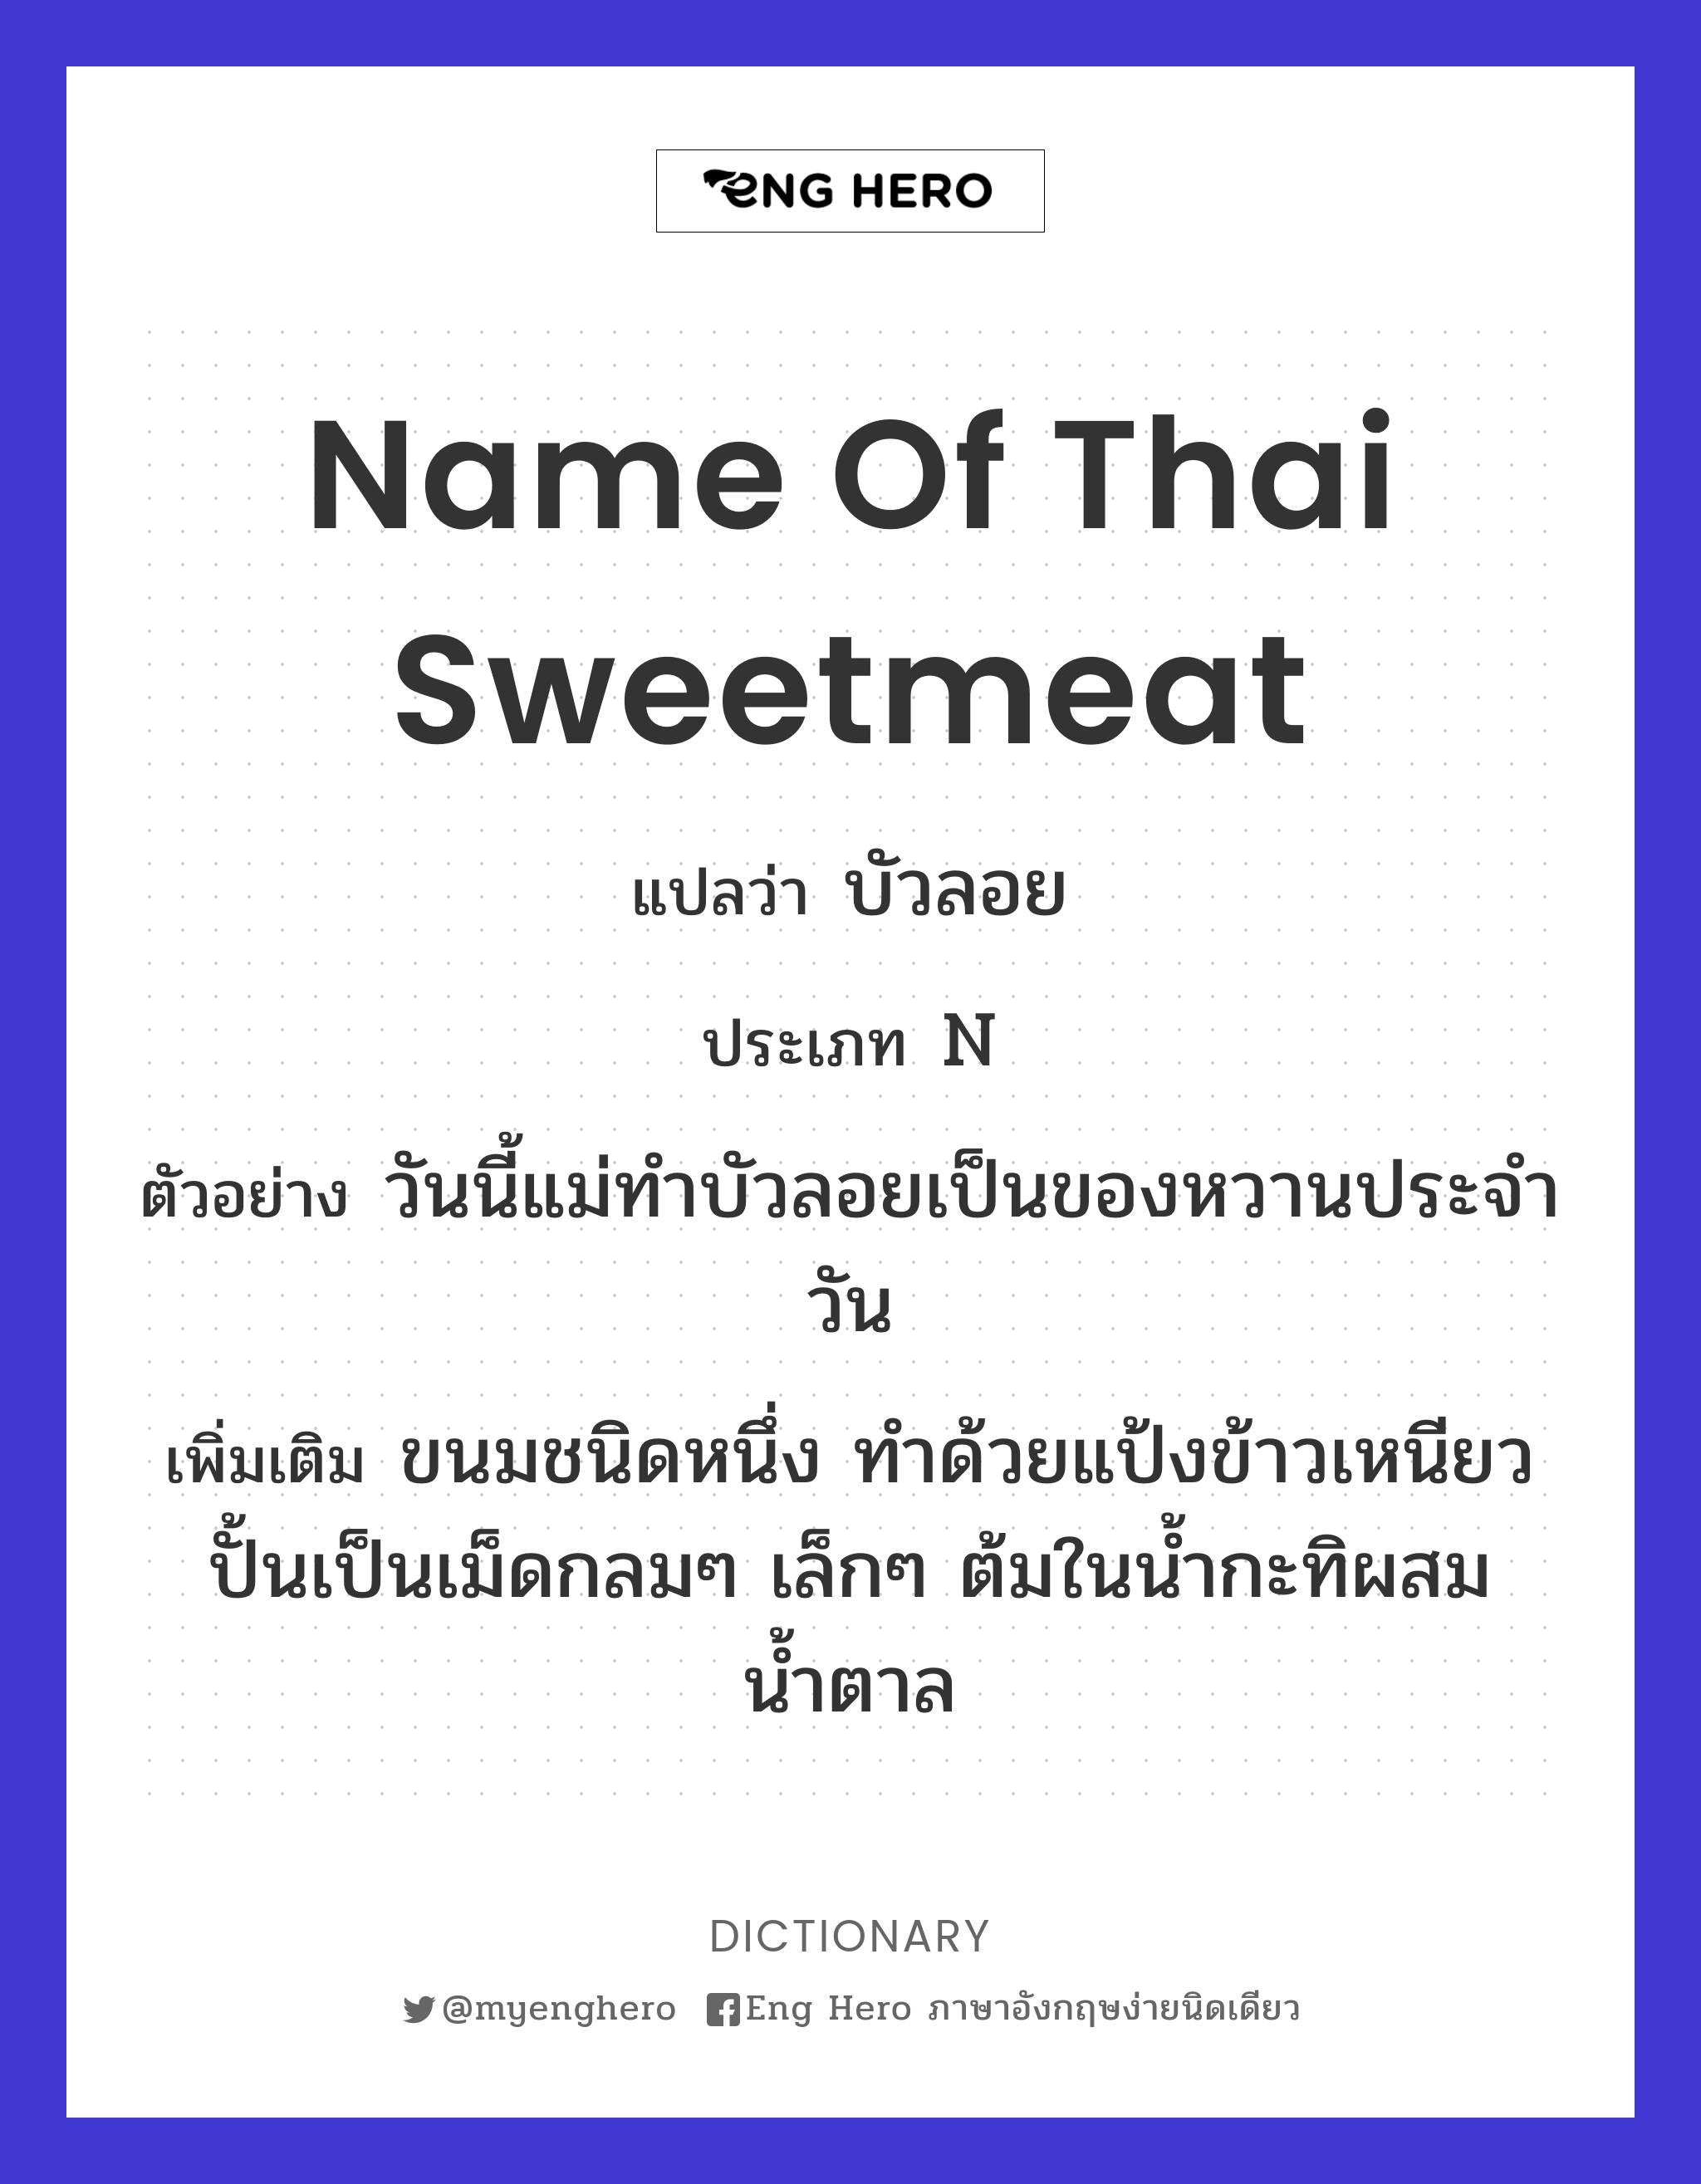 name of Thai sweetmeat